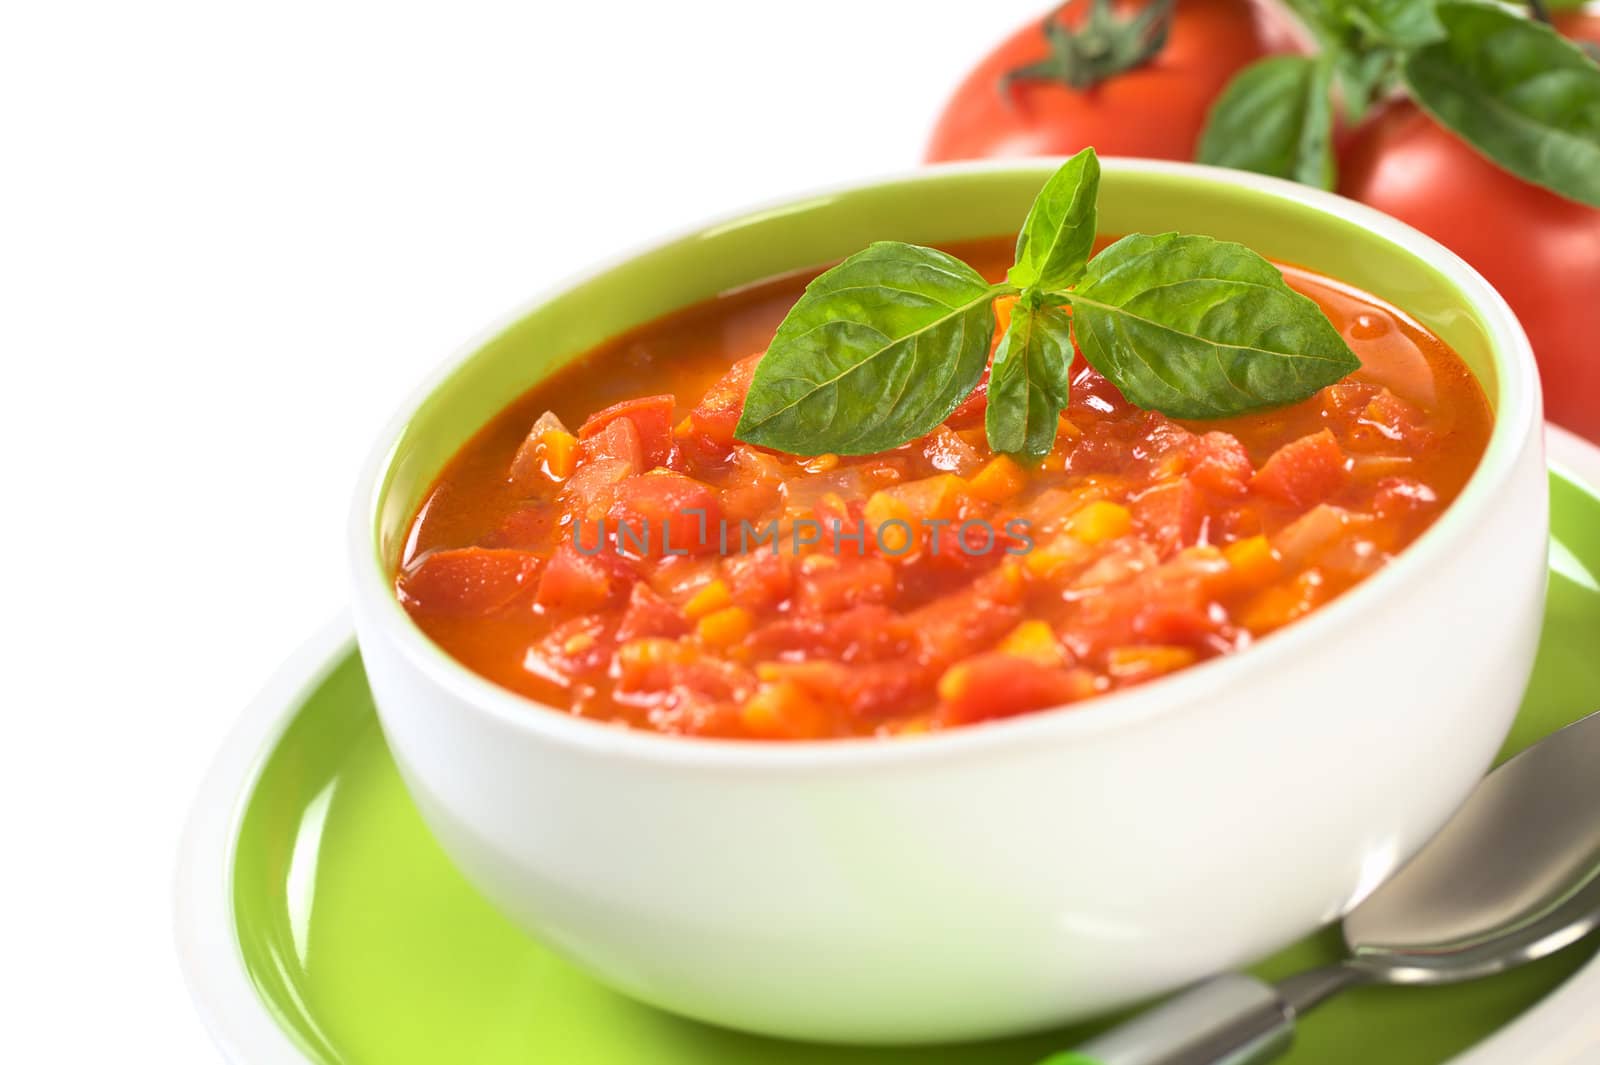 Chunky Tomato Soup by ildi